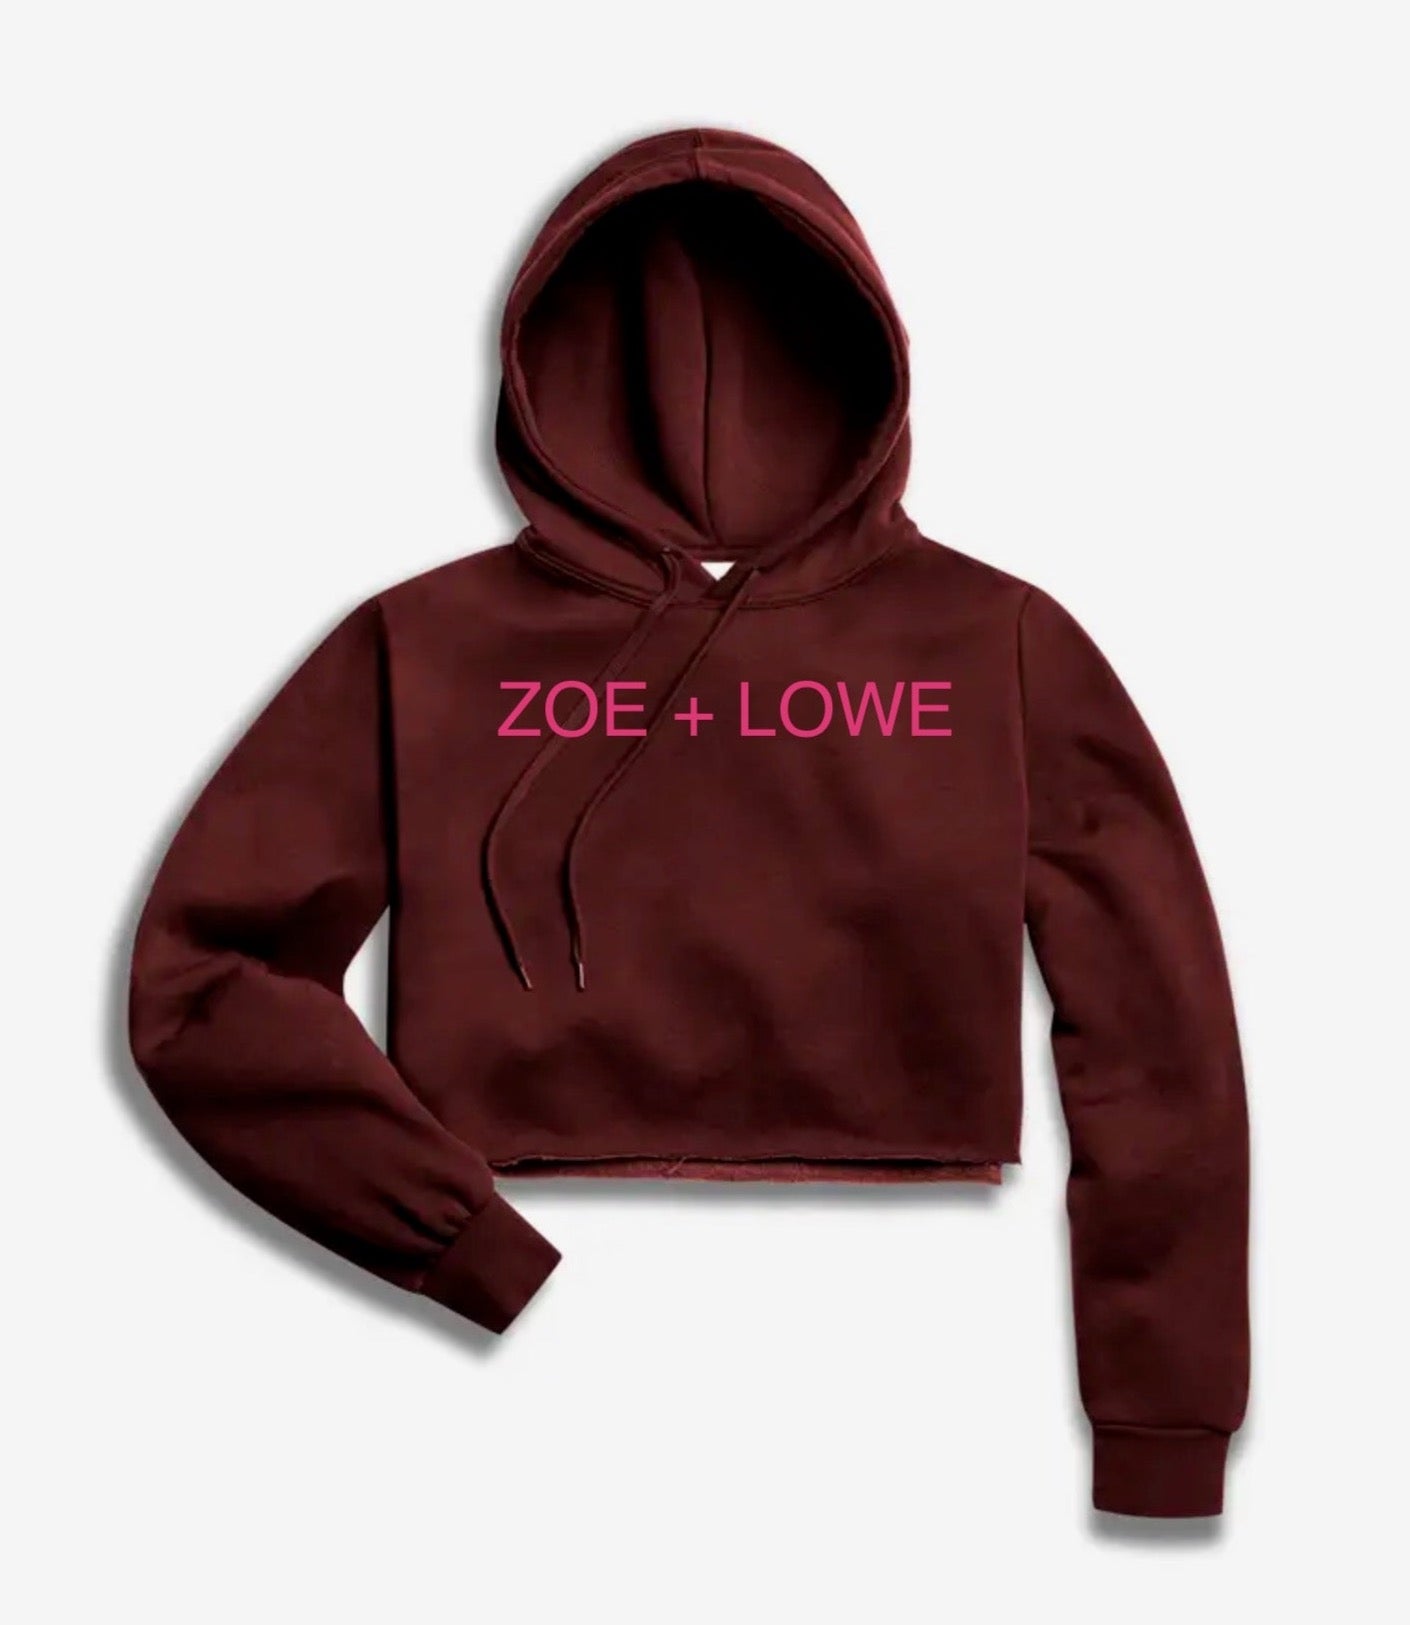 Zoe + Lowe Crop Hoody Sweatshirt H23: Burgundy and Pink